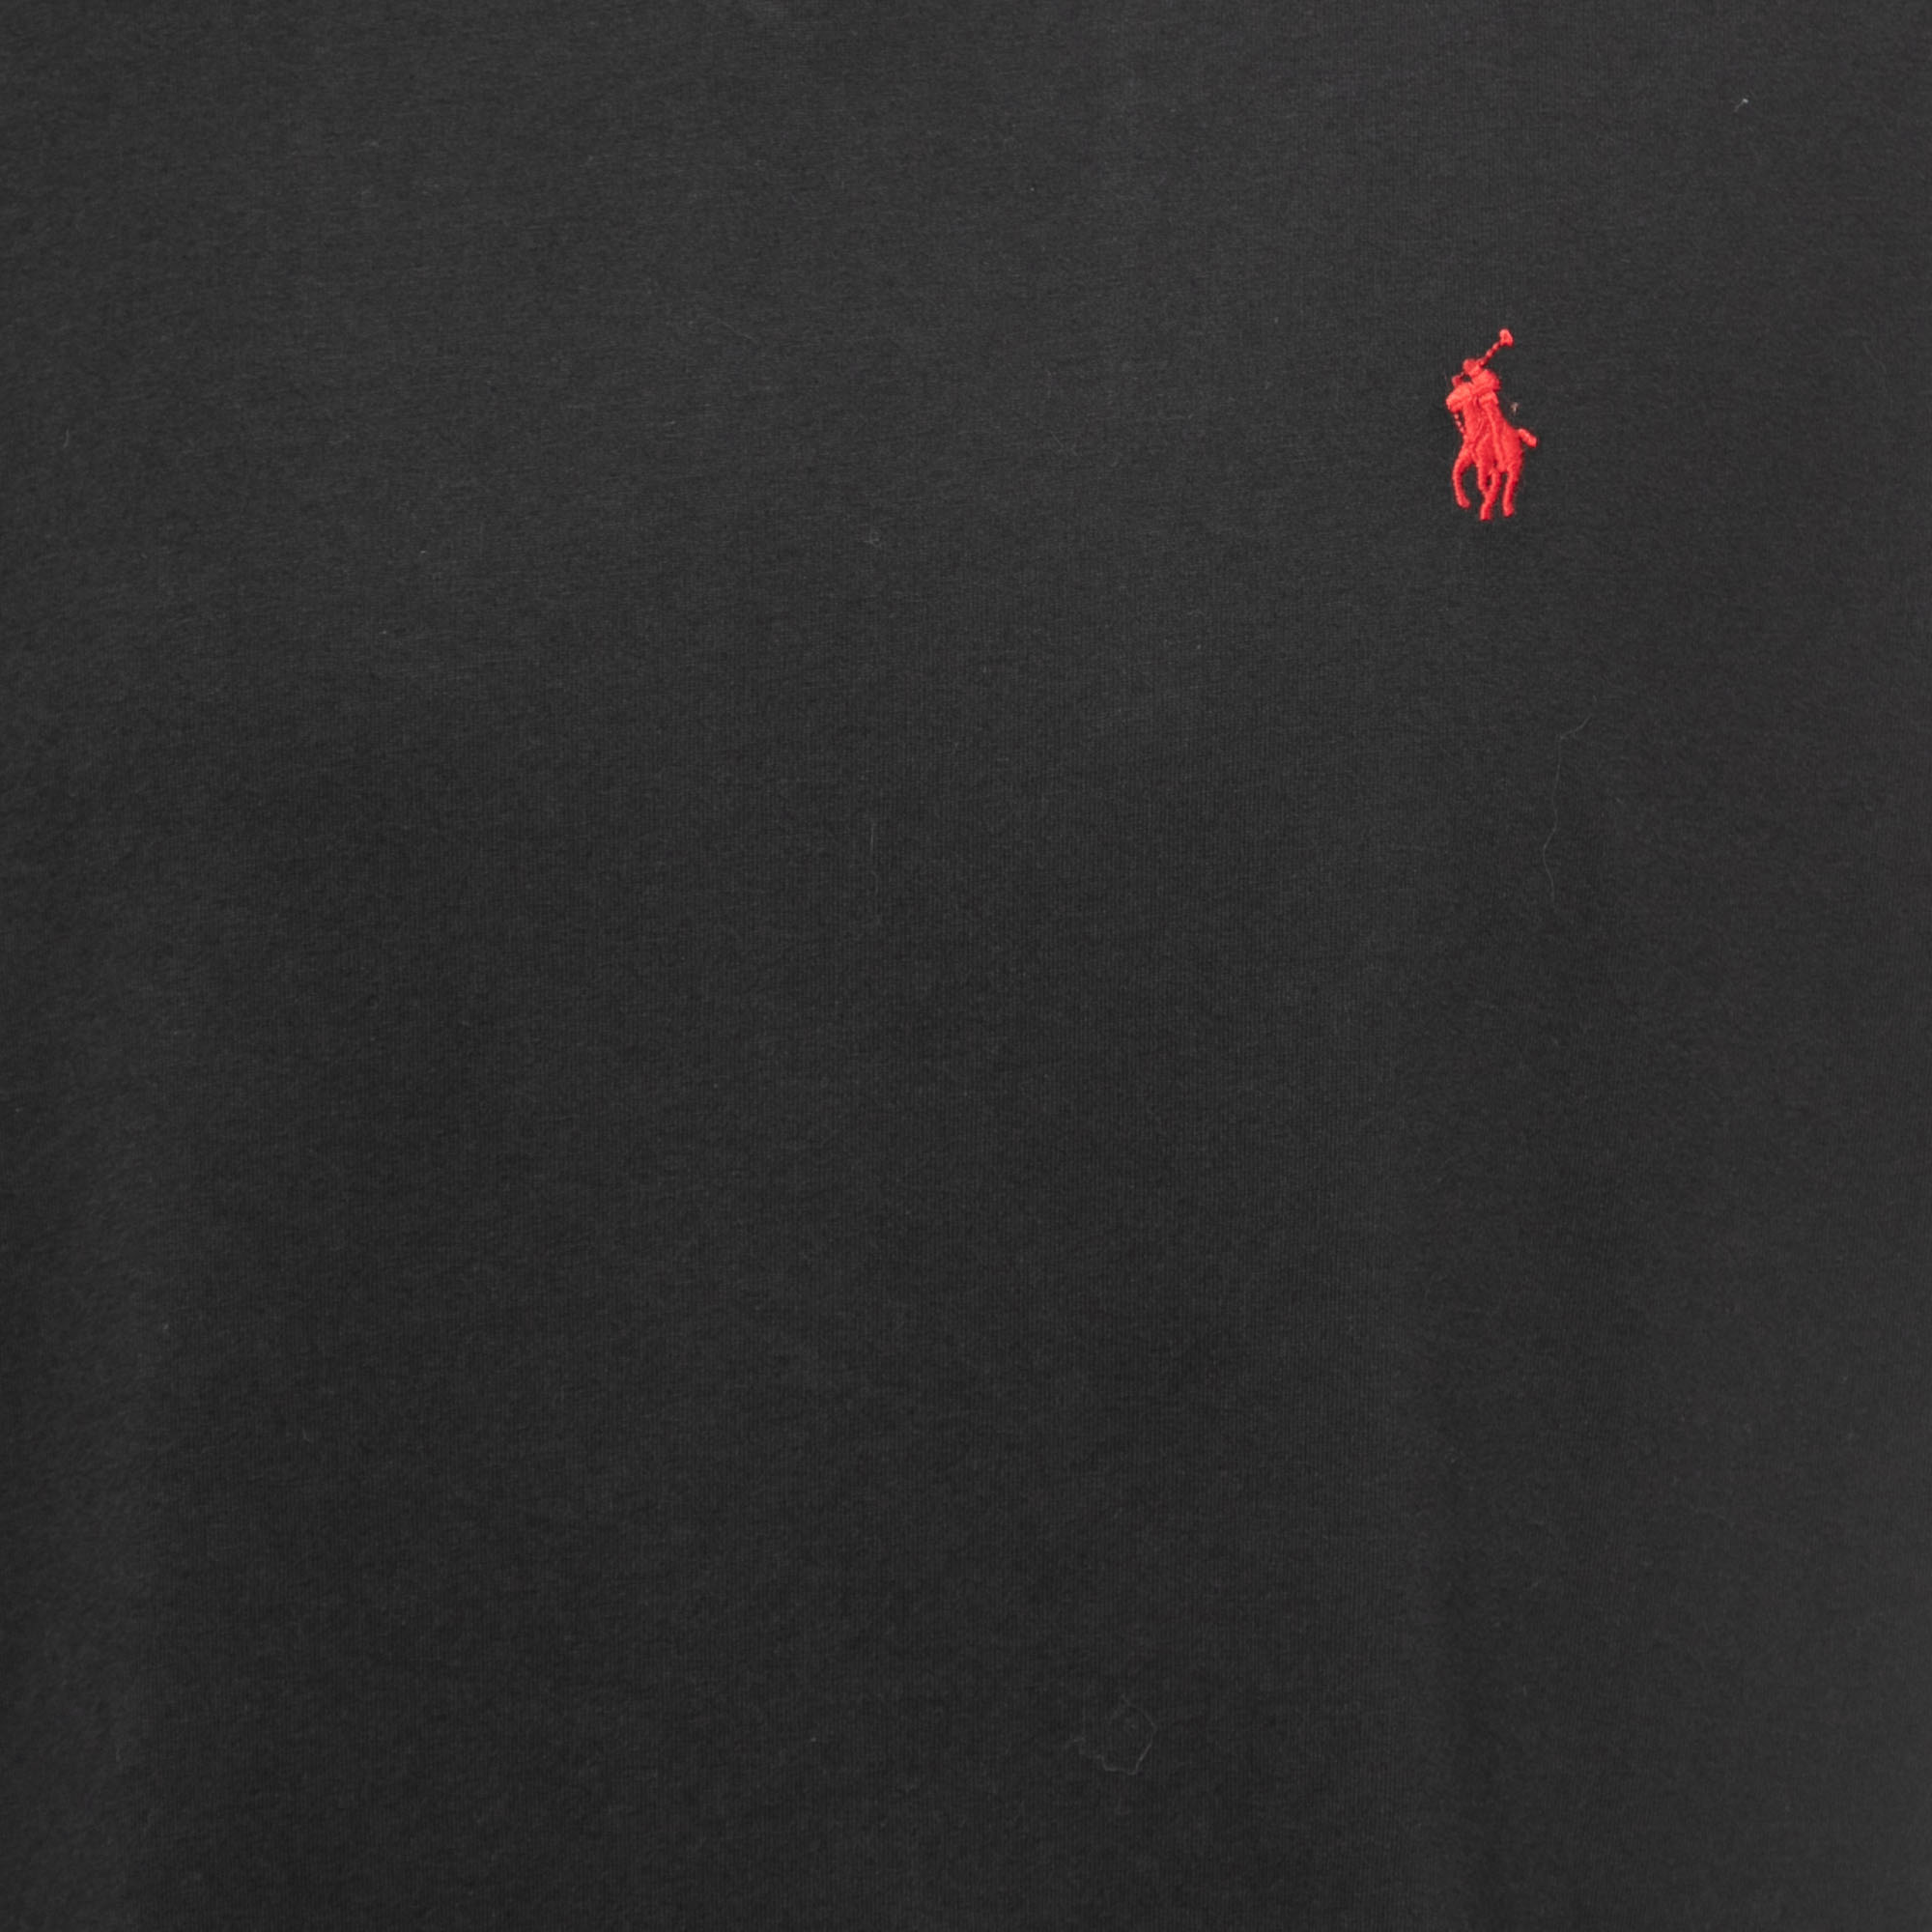 Polo Ralph Lauren Black Cotton V-Neck T-Shirt L